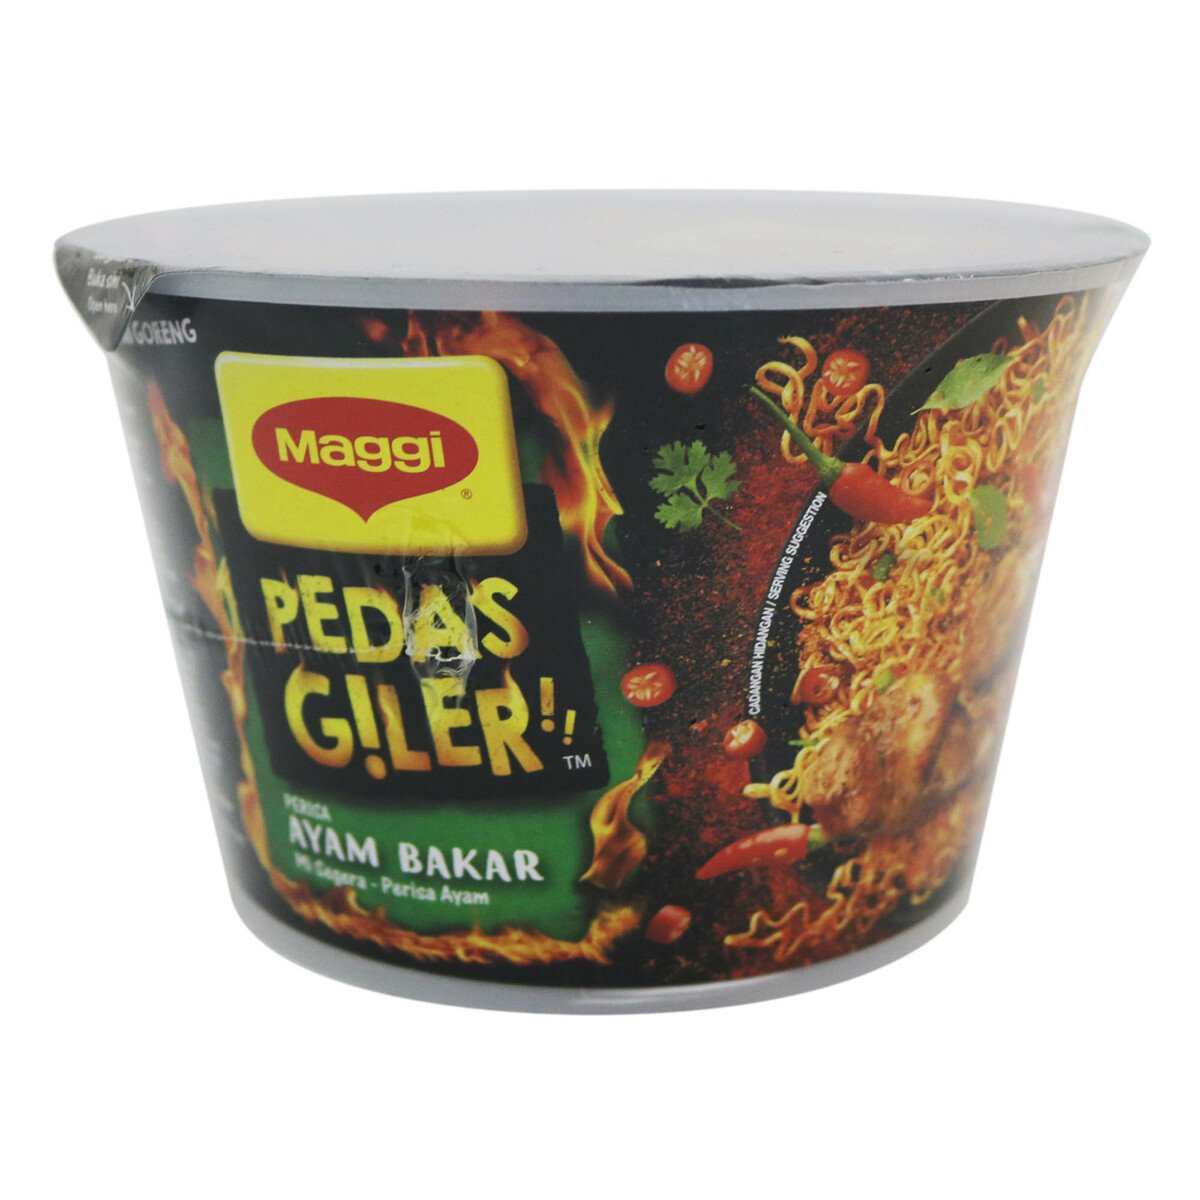 Maggi Pedas Giler Grilled Chicken 93g